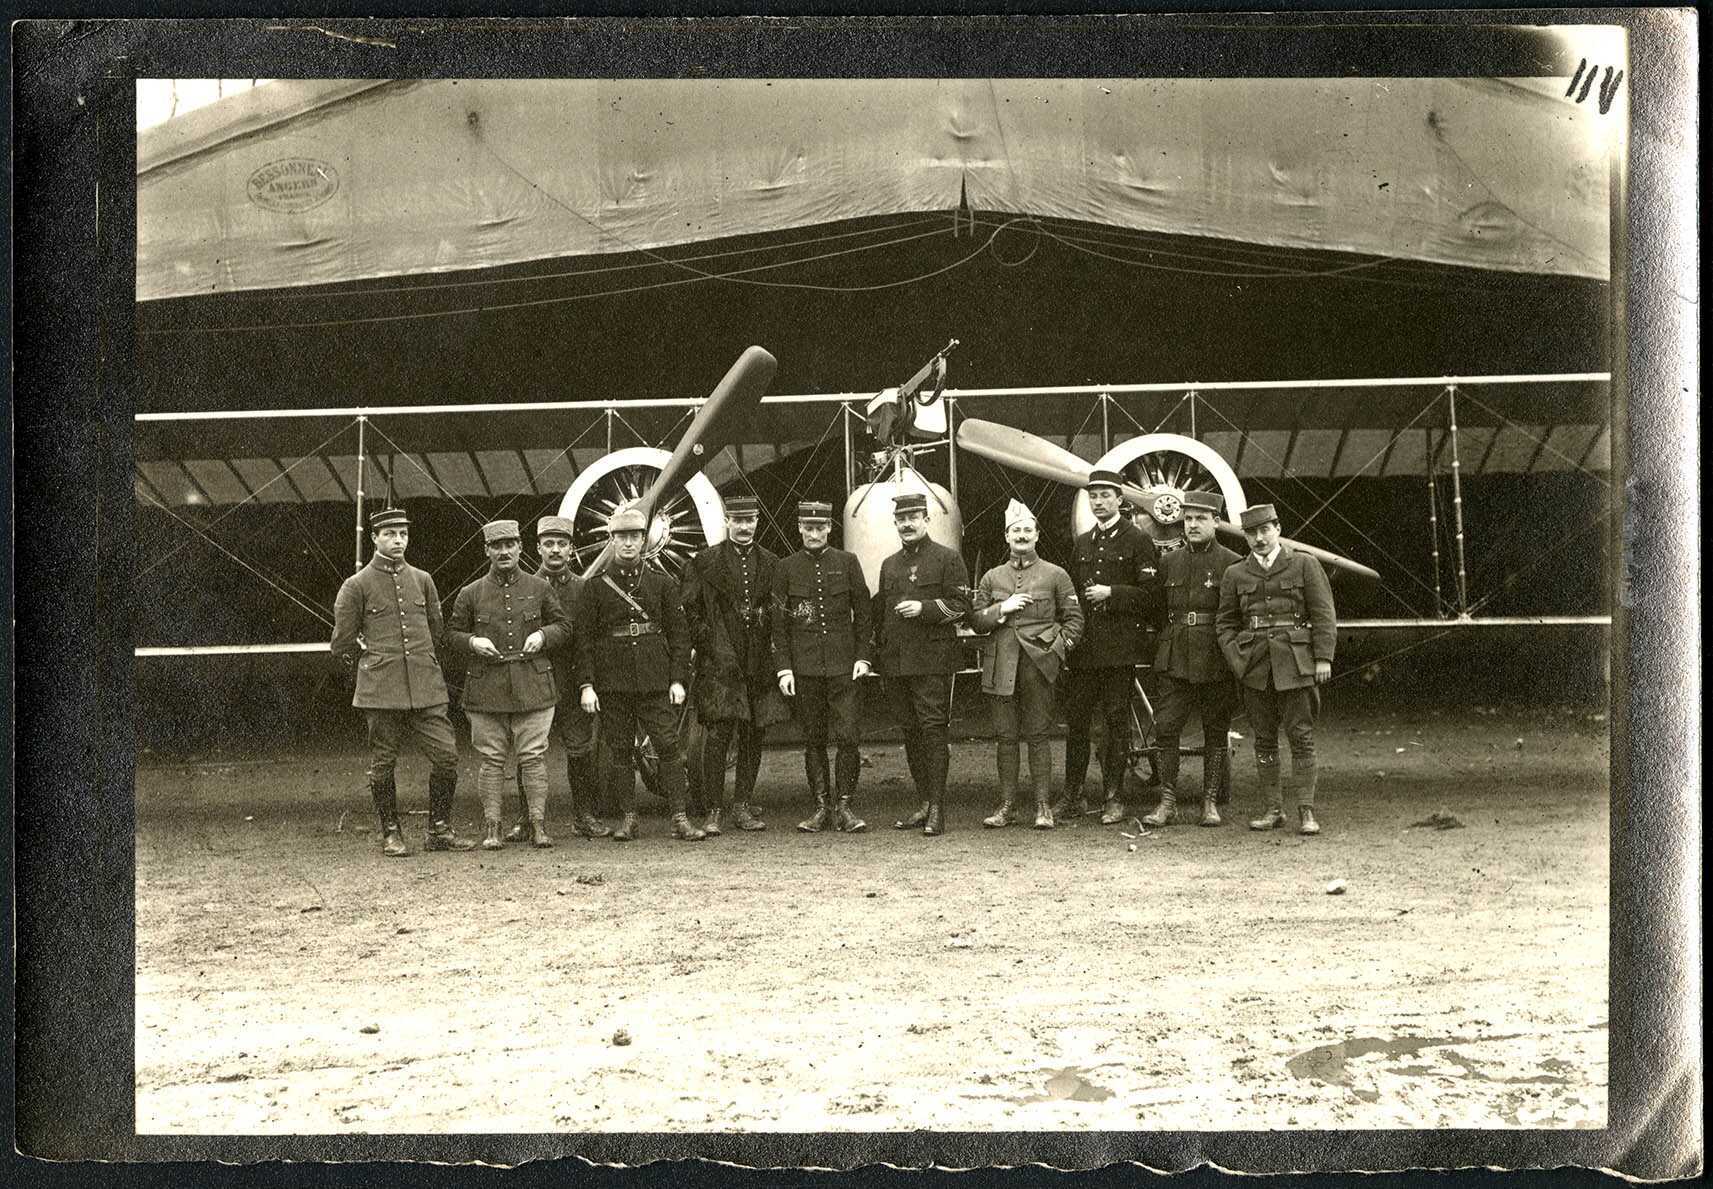 Belfort, Centre aéronautique militaire, Champ-de-Mars (Parc-à-Ballons), les pilotes de l'escadrille C 61, février 1916.